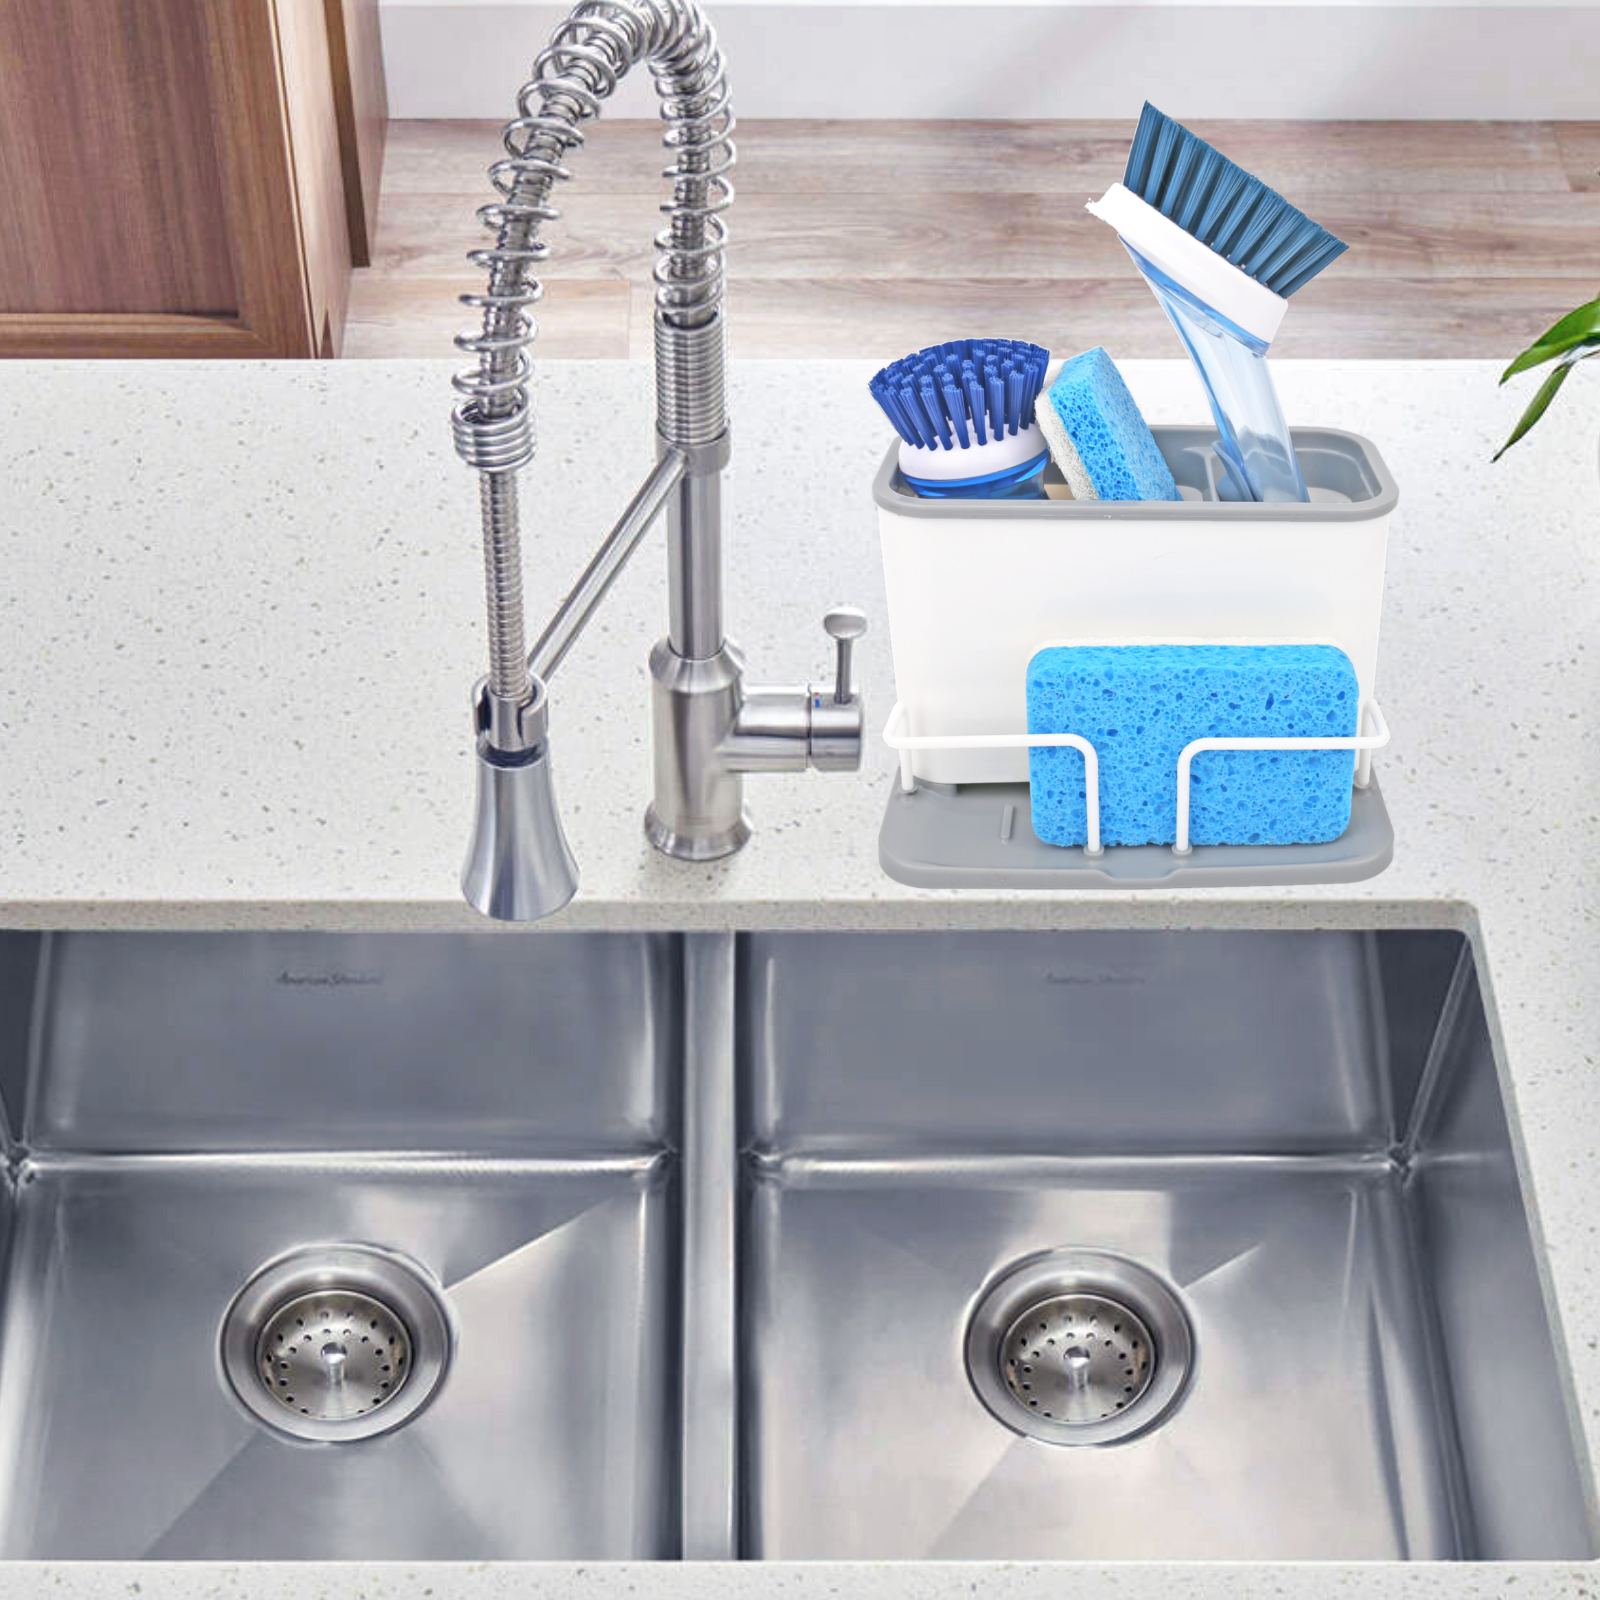 Stainless Steel Kitchen Sink Caddy Organizer With Brush DishCloth & Sp –  LyftLivin